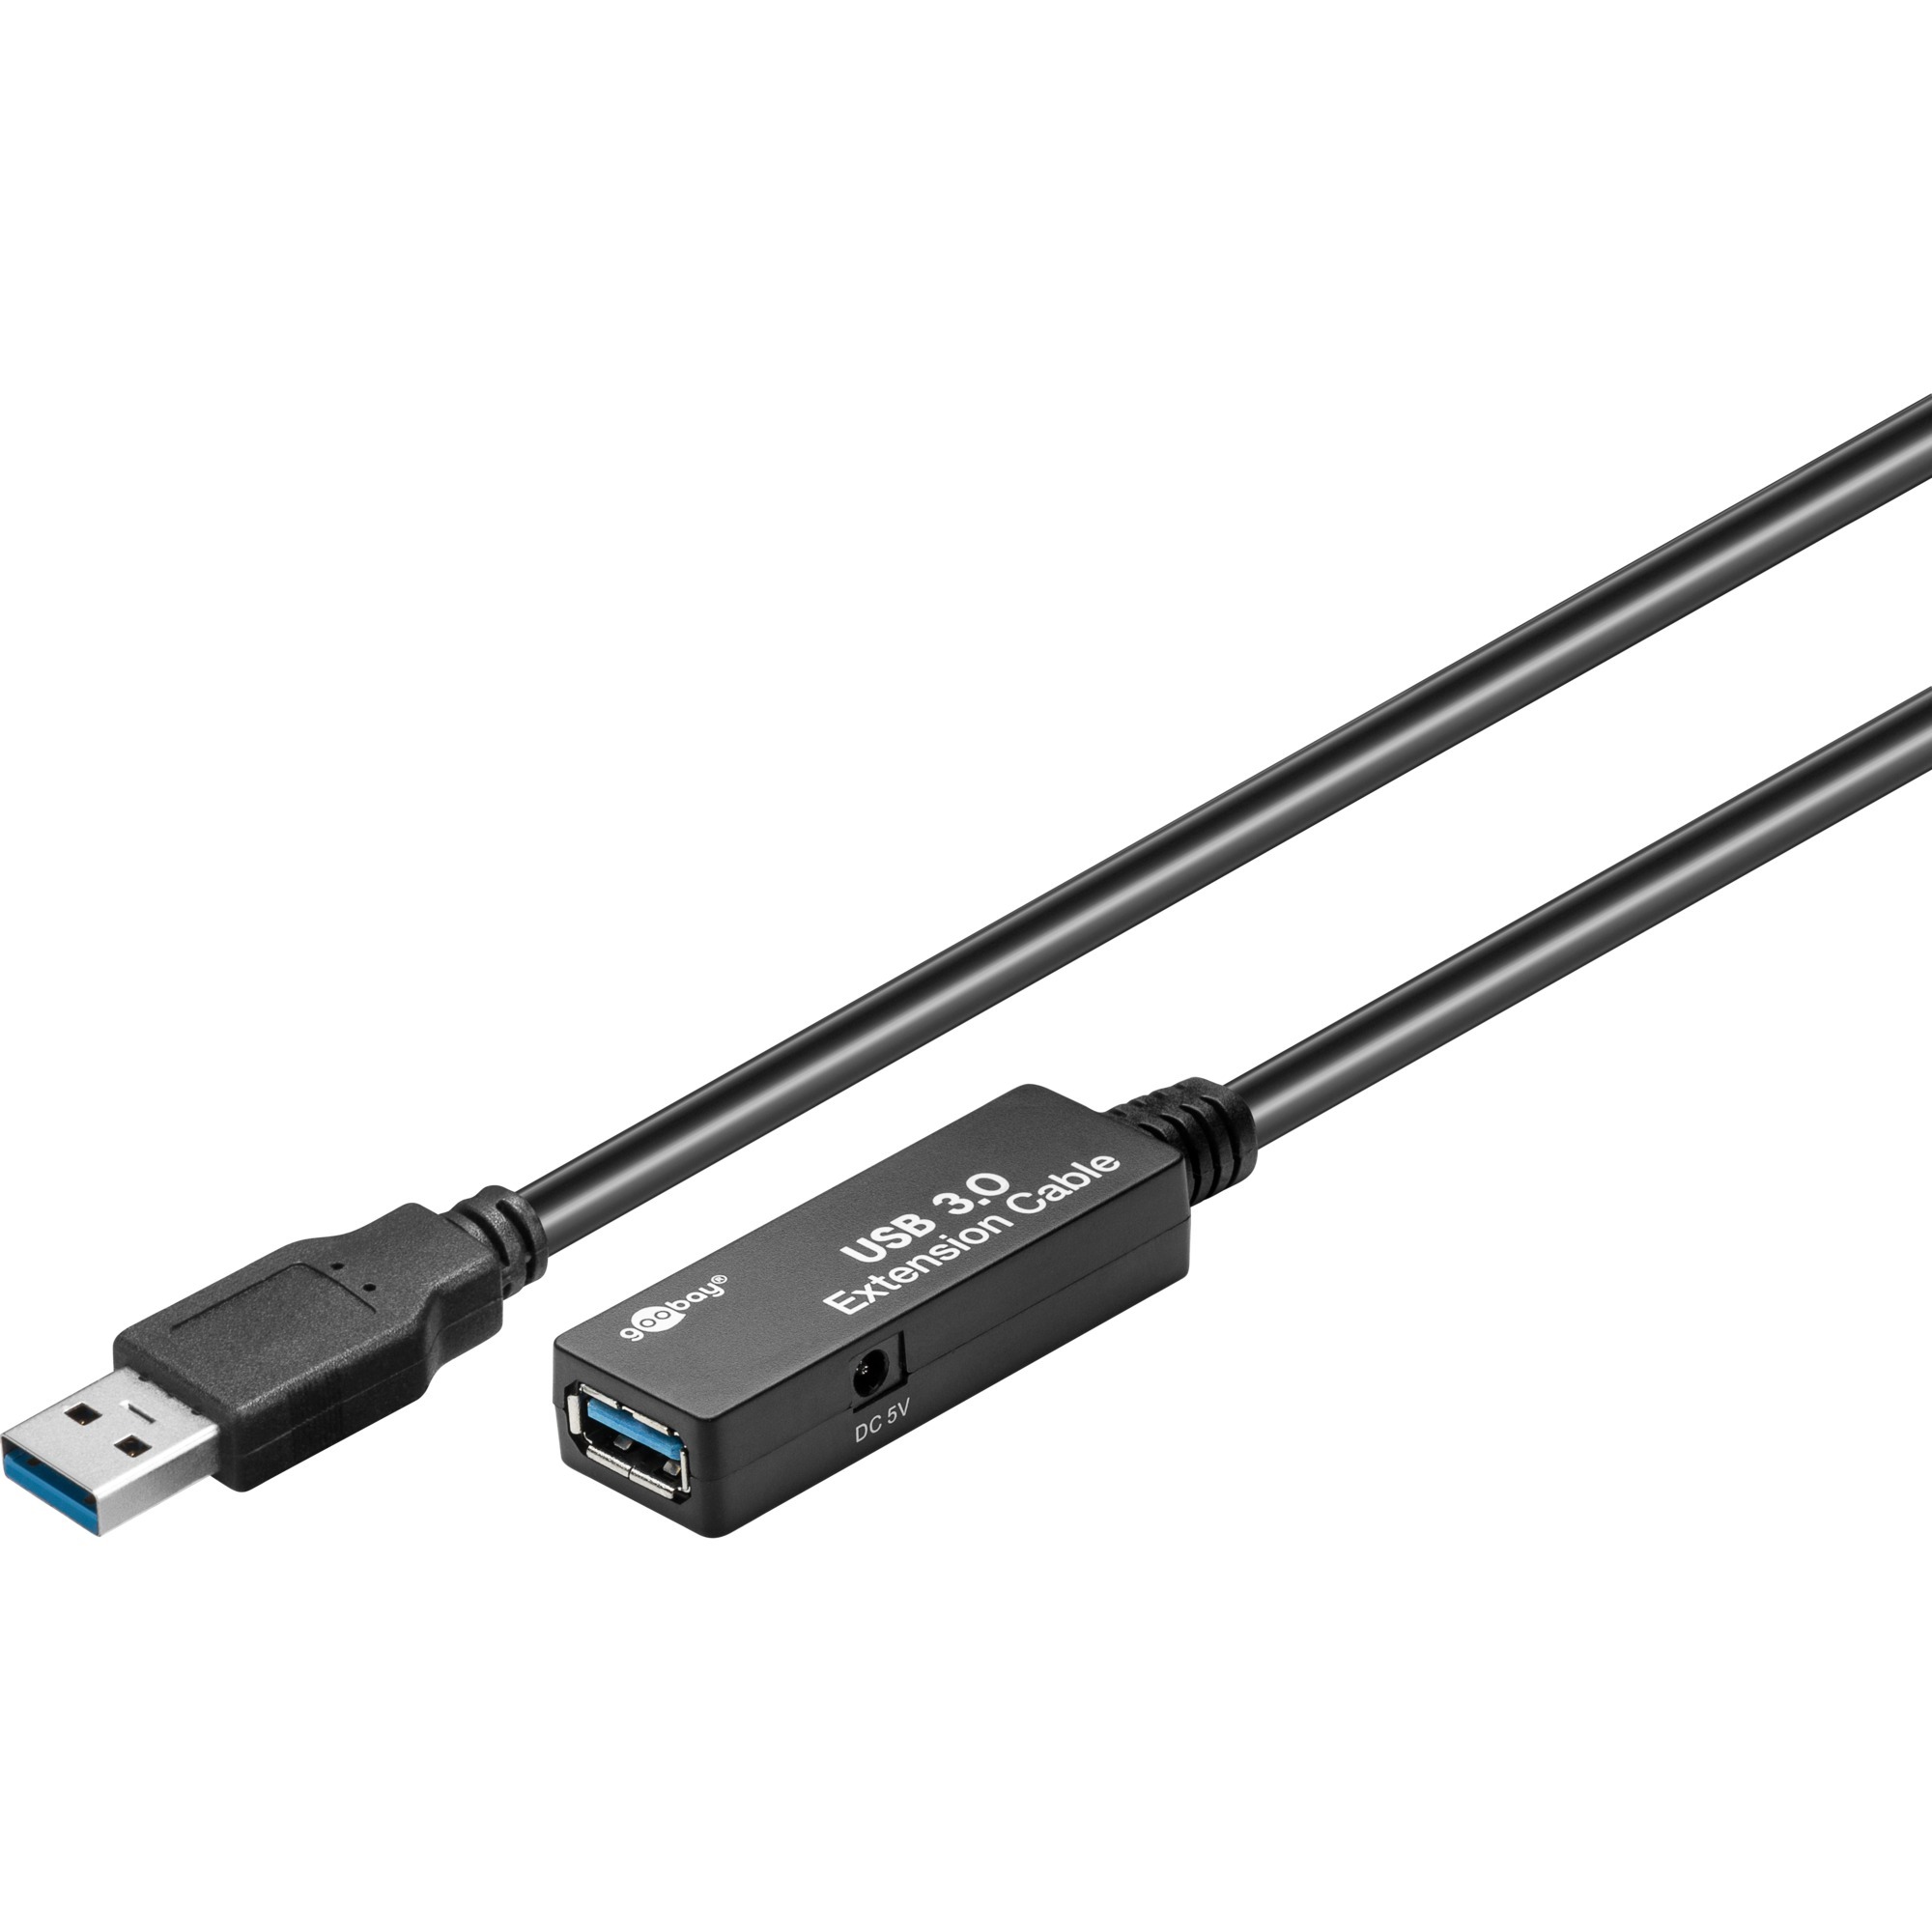 Image of Alternate - Kabel Repeater USB 3.0, Verlängerungskabel online einkaufen bei Alternate